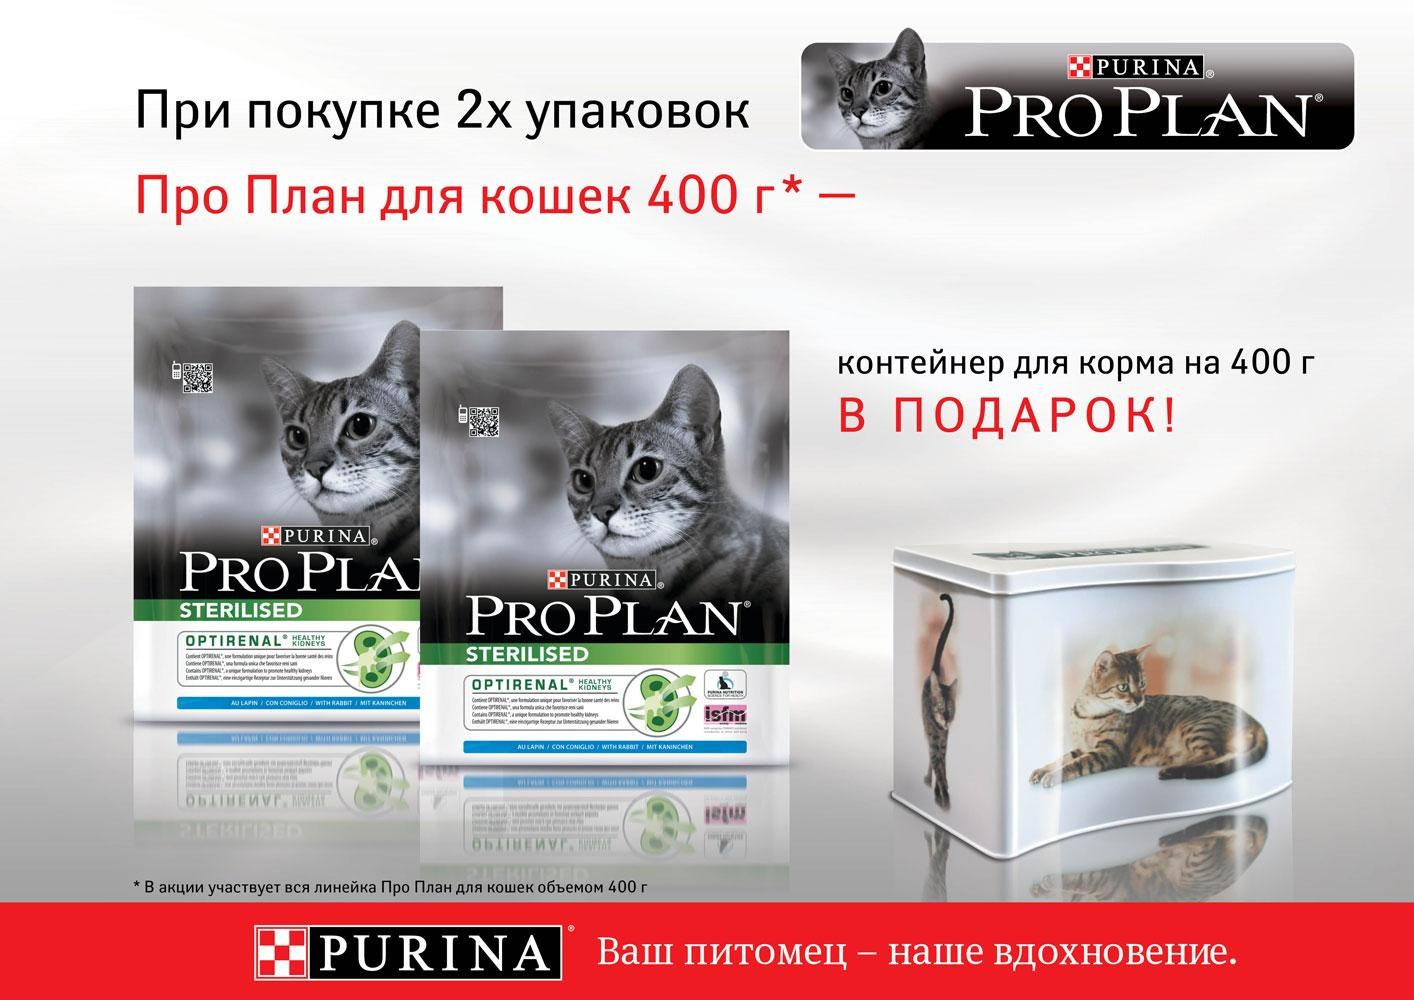 Pro plan екатеринбург. Purina Pro Plan корм Purina Pro Plan. Корма для кошек Пурина Проплан. Purina Pro Plan баннер. Пурина про план для кошек.